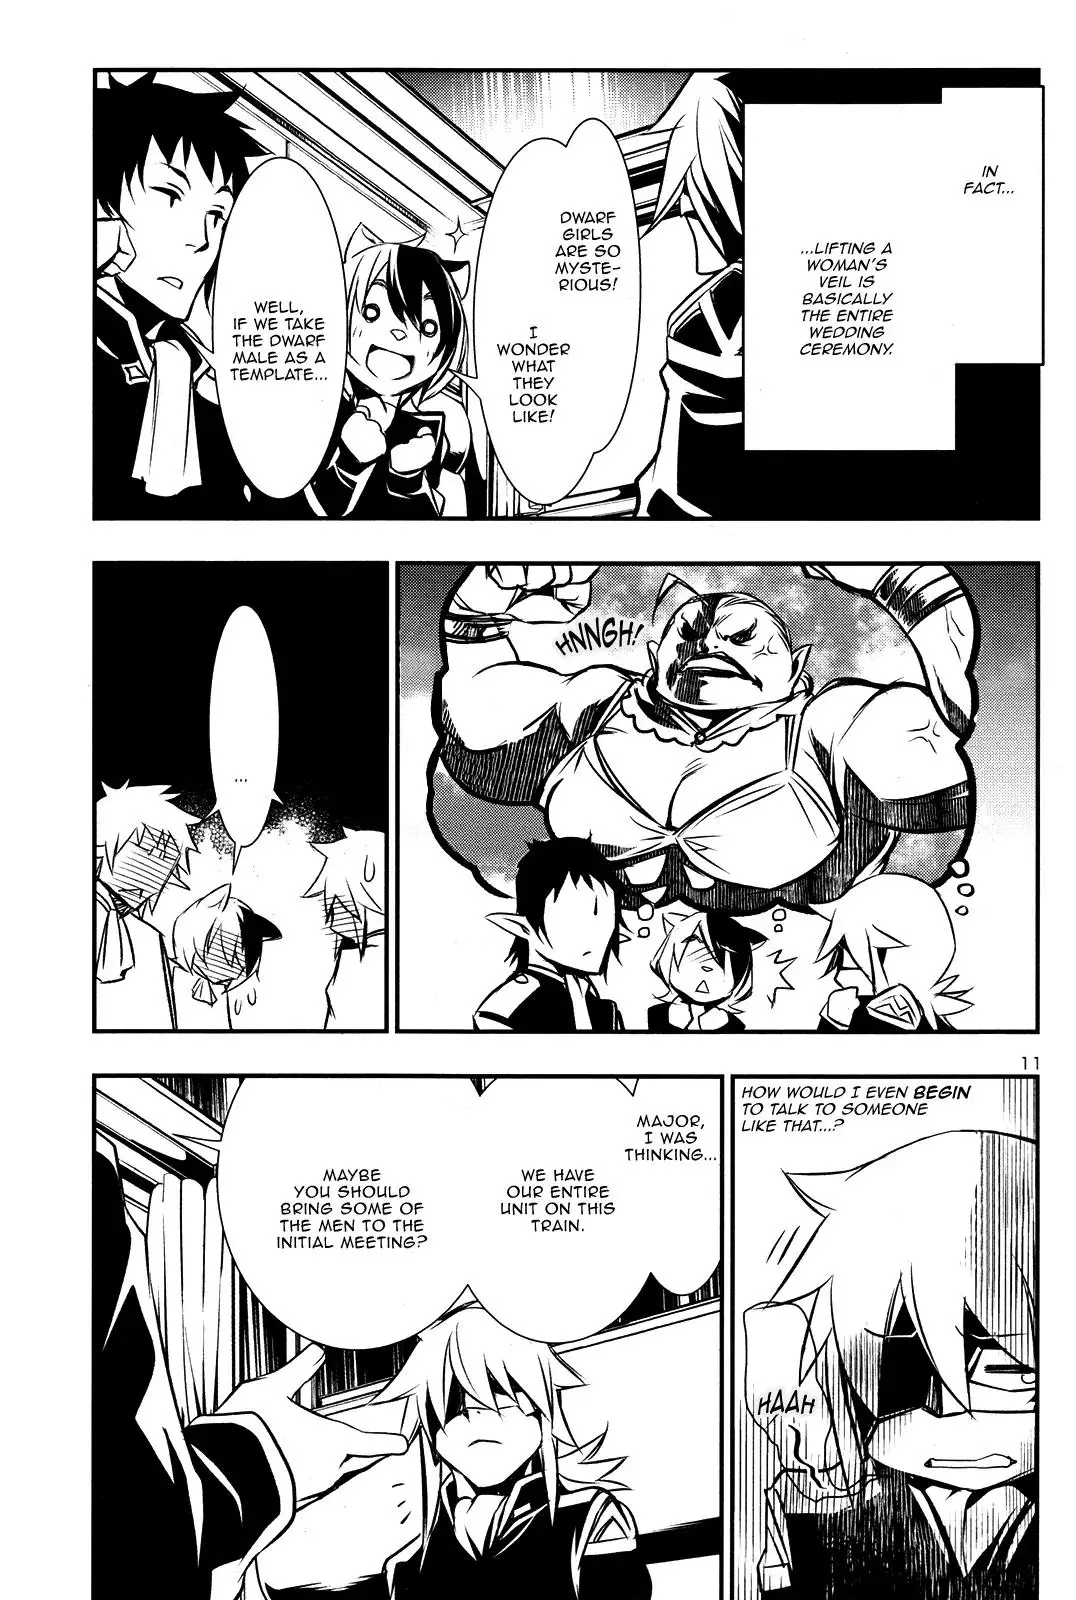 Shinju no Nectar - 9 page 9